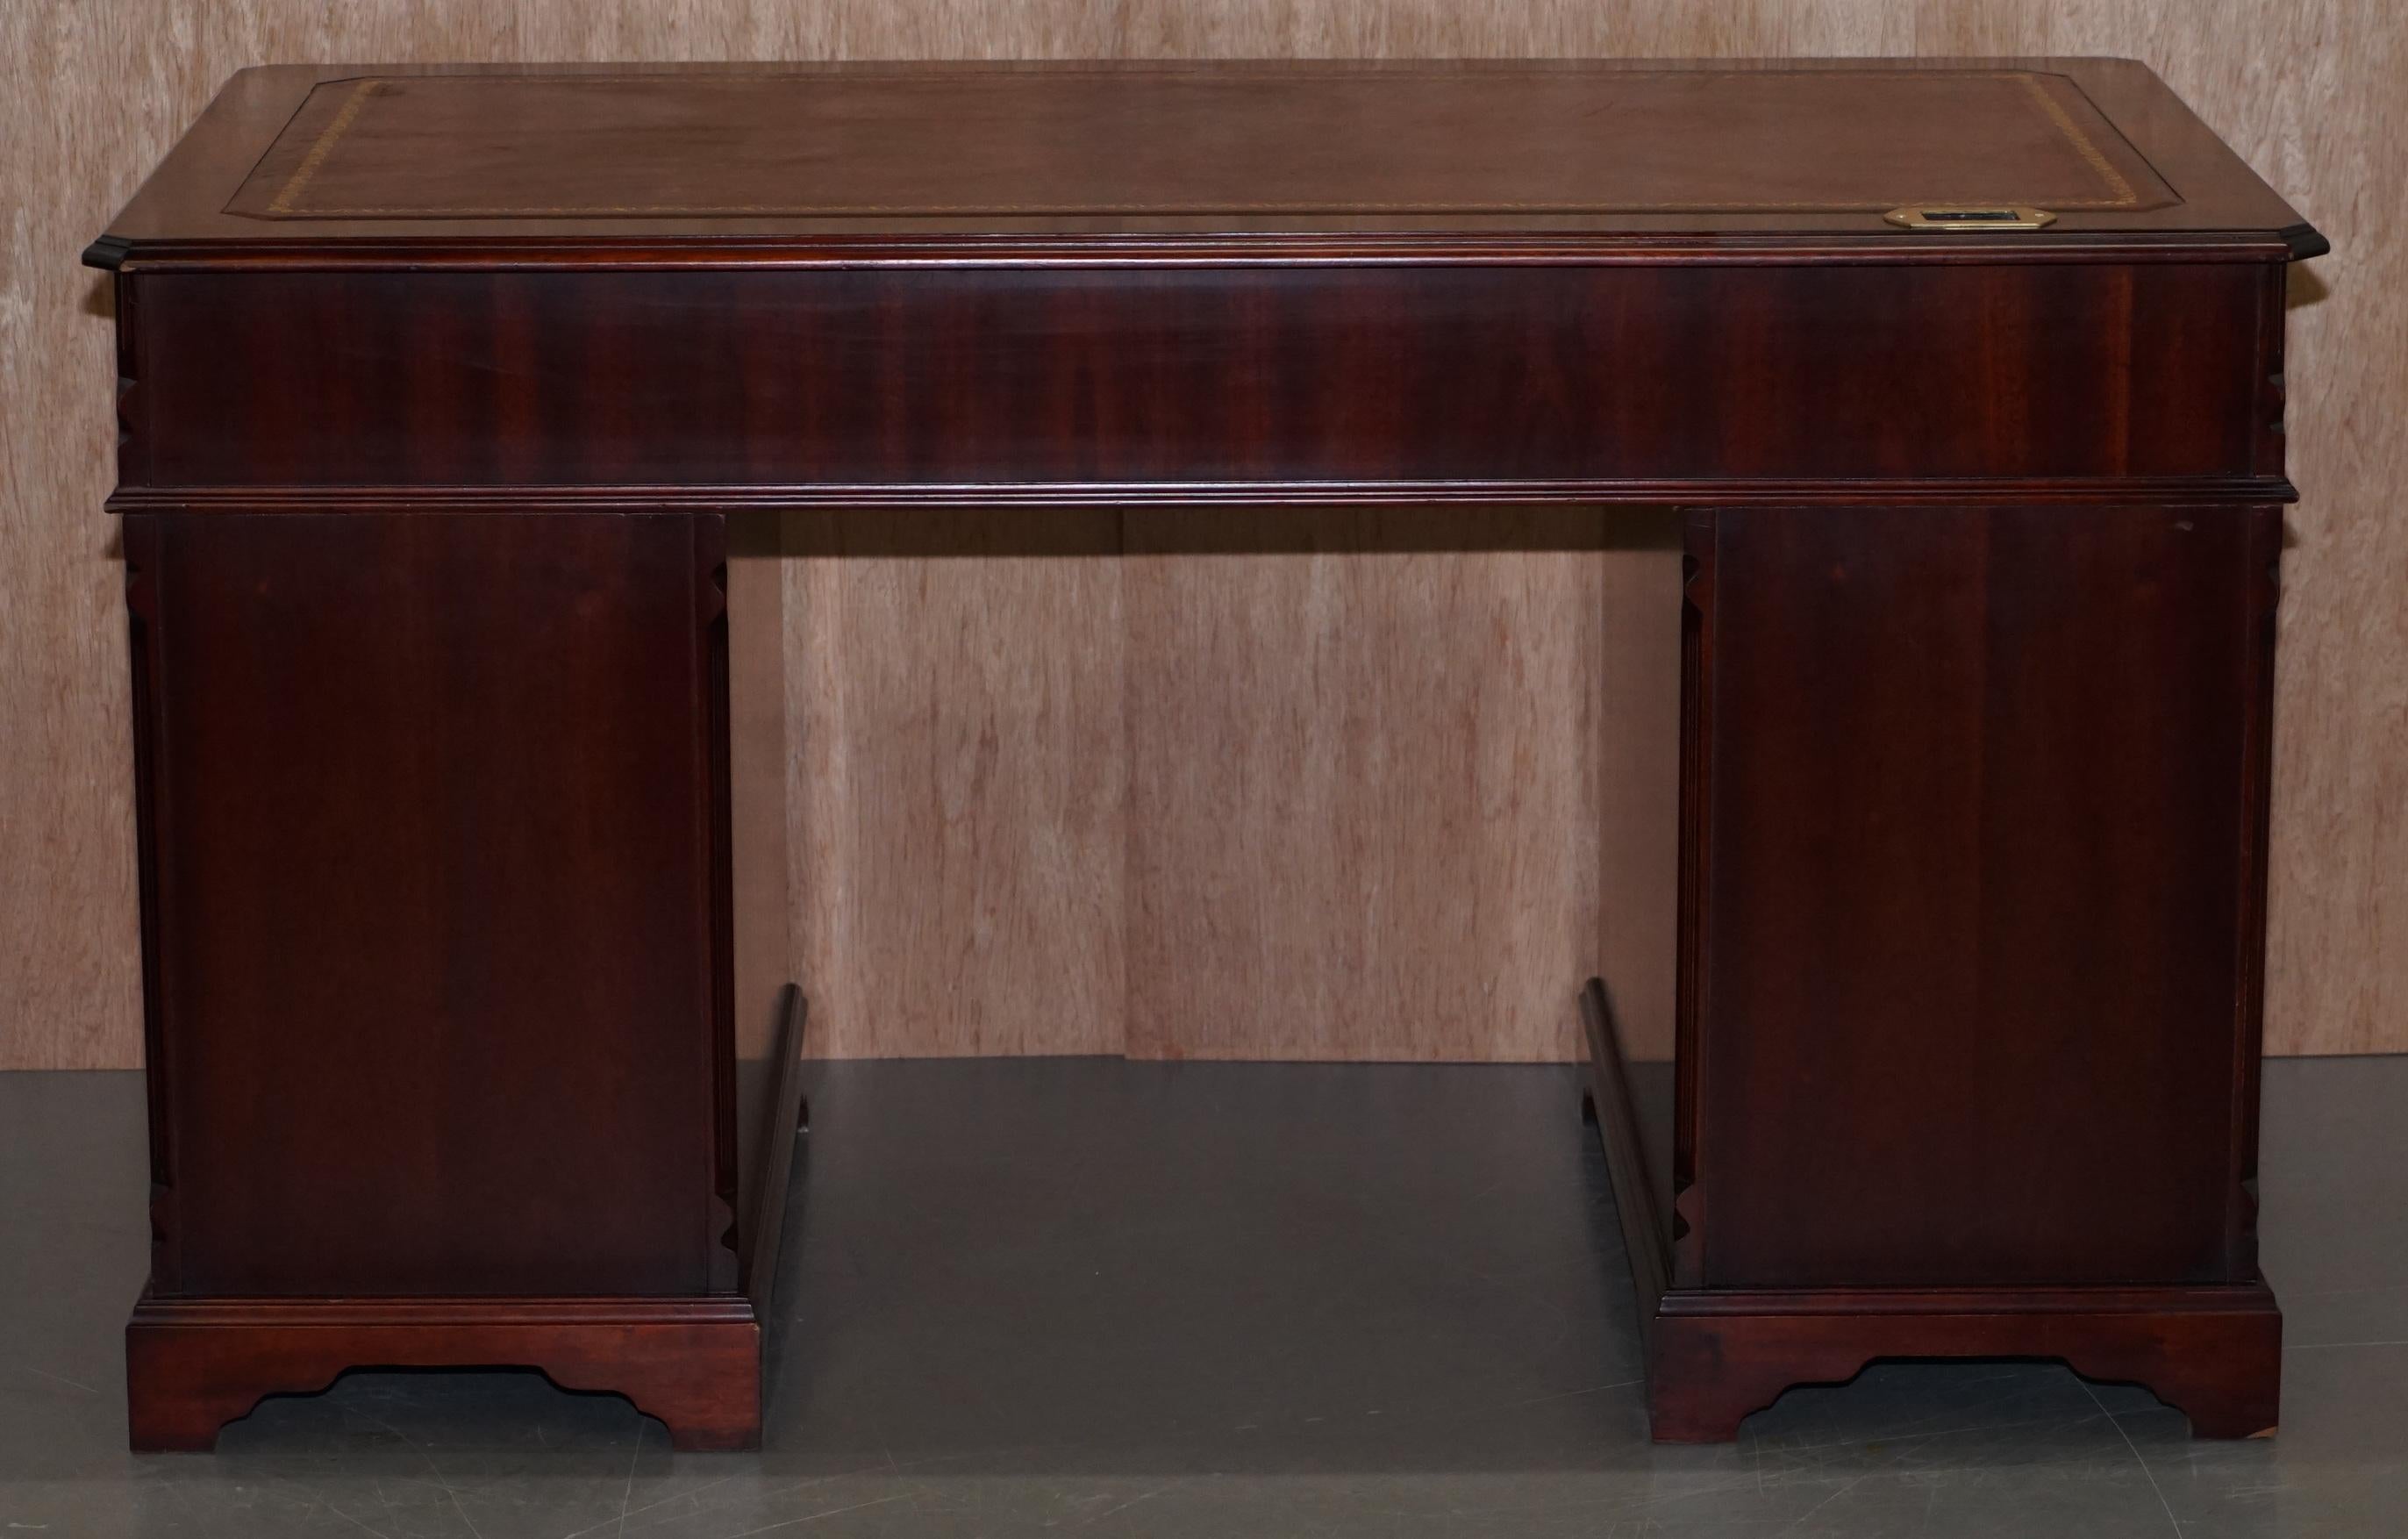 Luxury Flamed Hardwood Oxblood Leather Twin Pedestal Partner Desk Keyboard Shelf 6